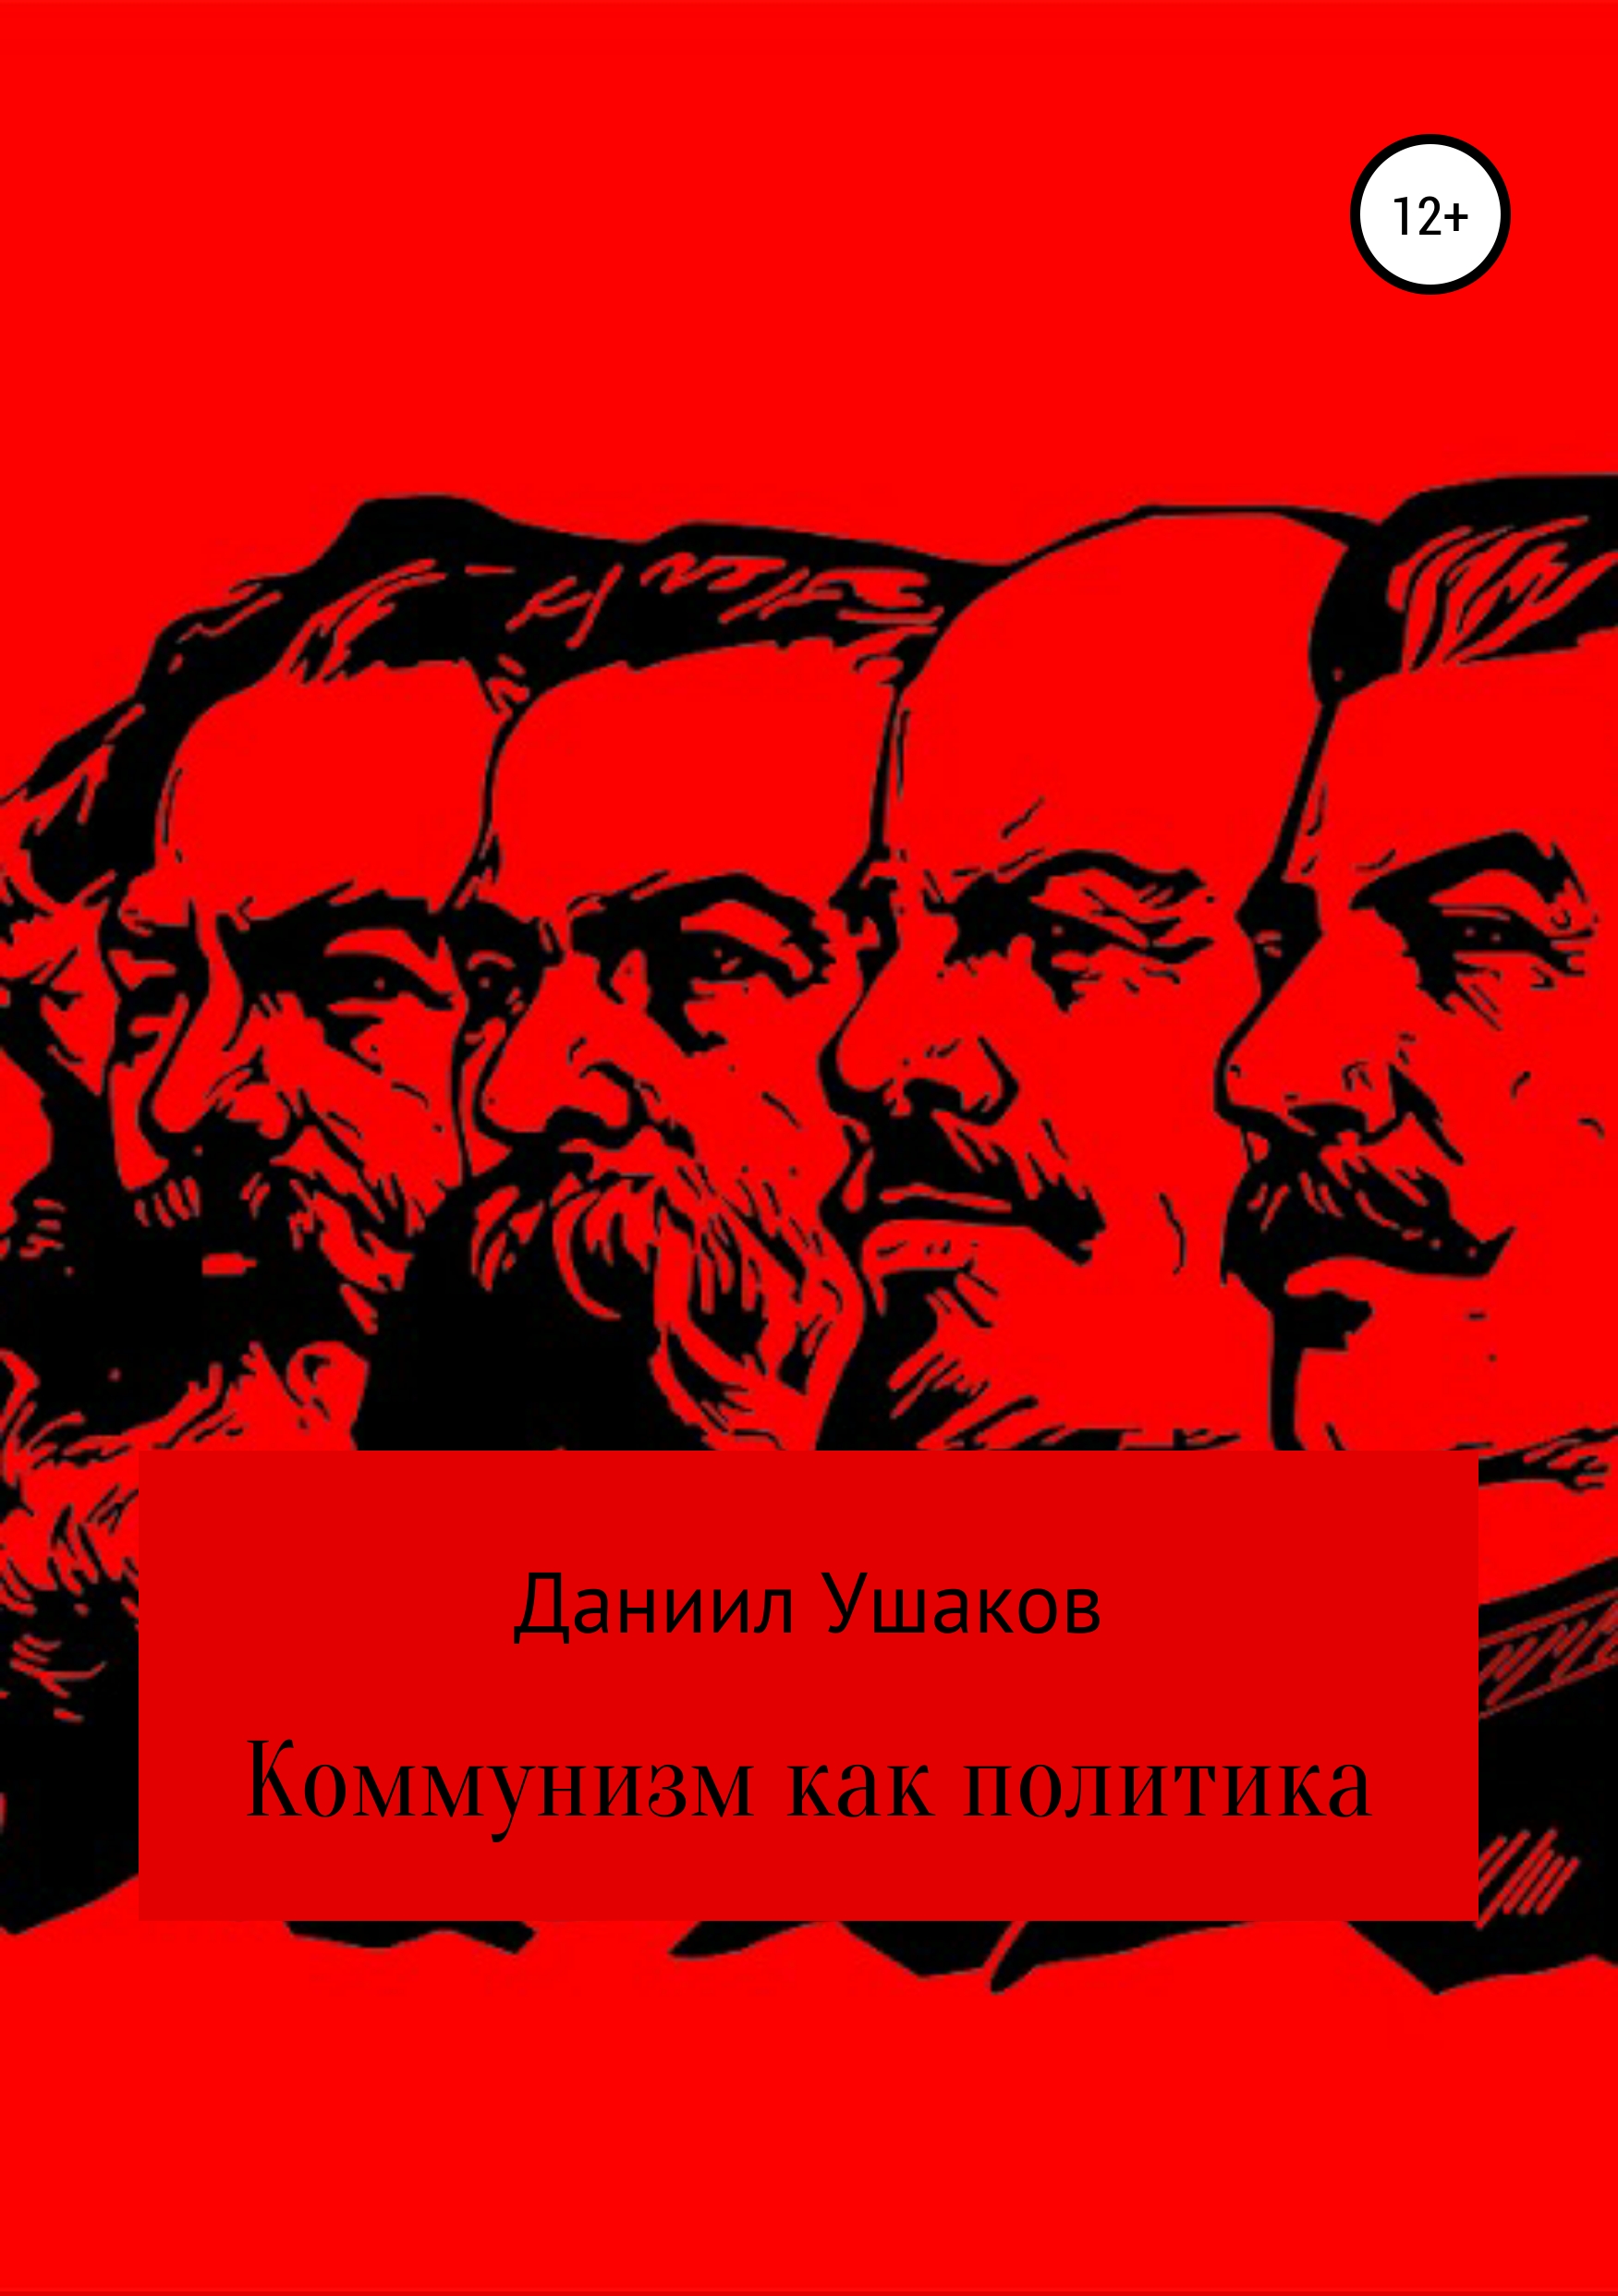 Книга Коммунизм как политика из серии , созданная Даниил Ушаков, может относится к жанру Документальная литература. Стоимость электронной книги Коммунизм как политика с идентификатором 42131023 составляет 99.90 руб.